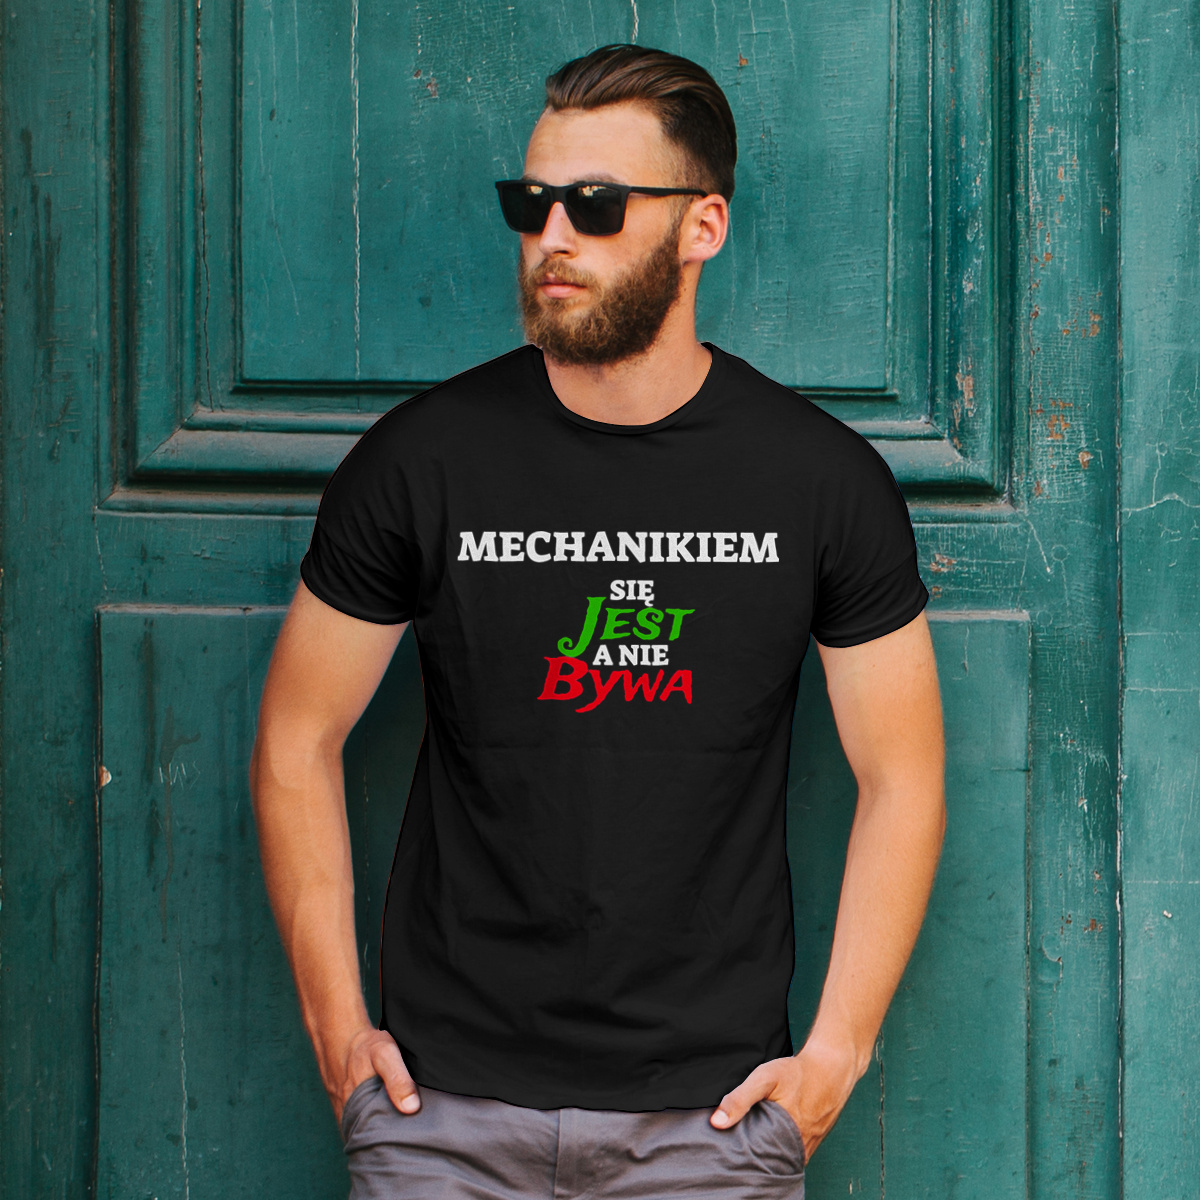 Mechanikiem Się Jest, A Nie Bywa - Męska Koszulka Czarna